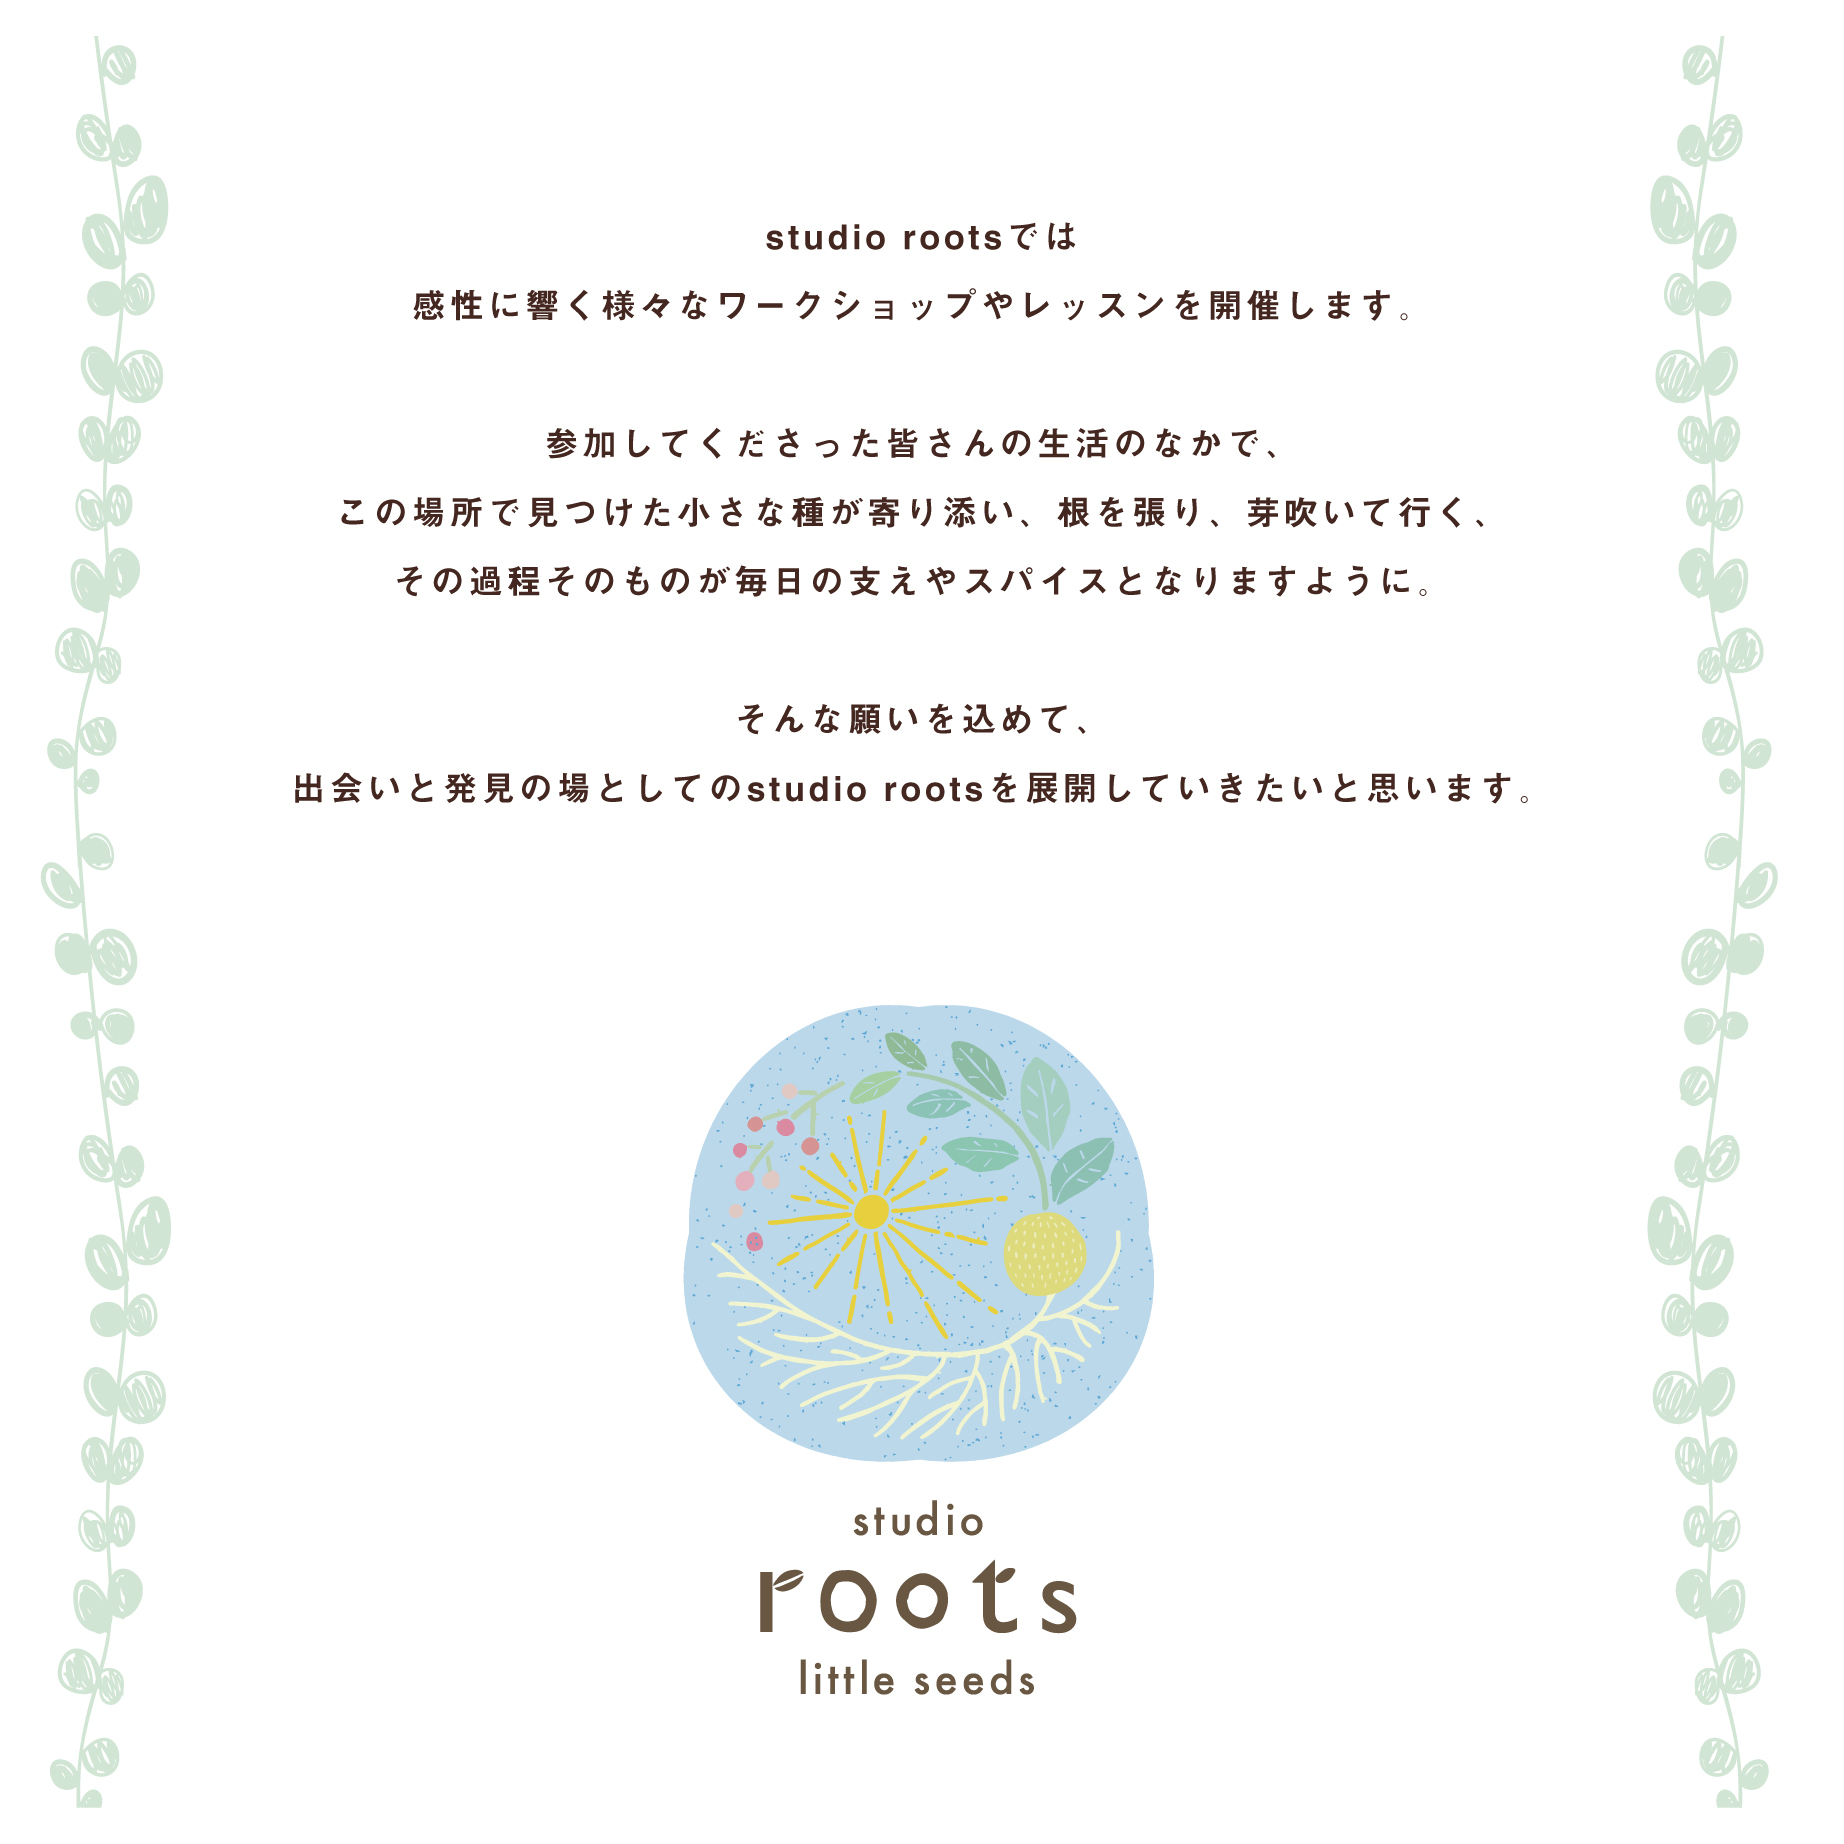 【roots】2月のスケジュール